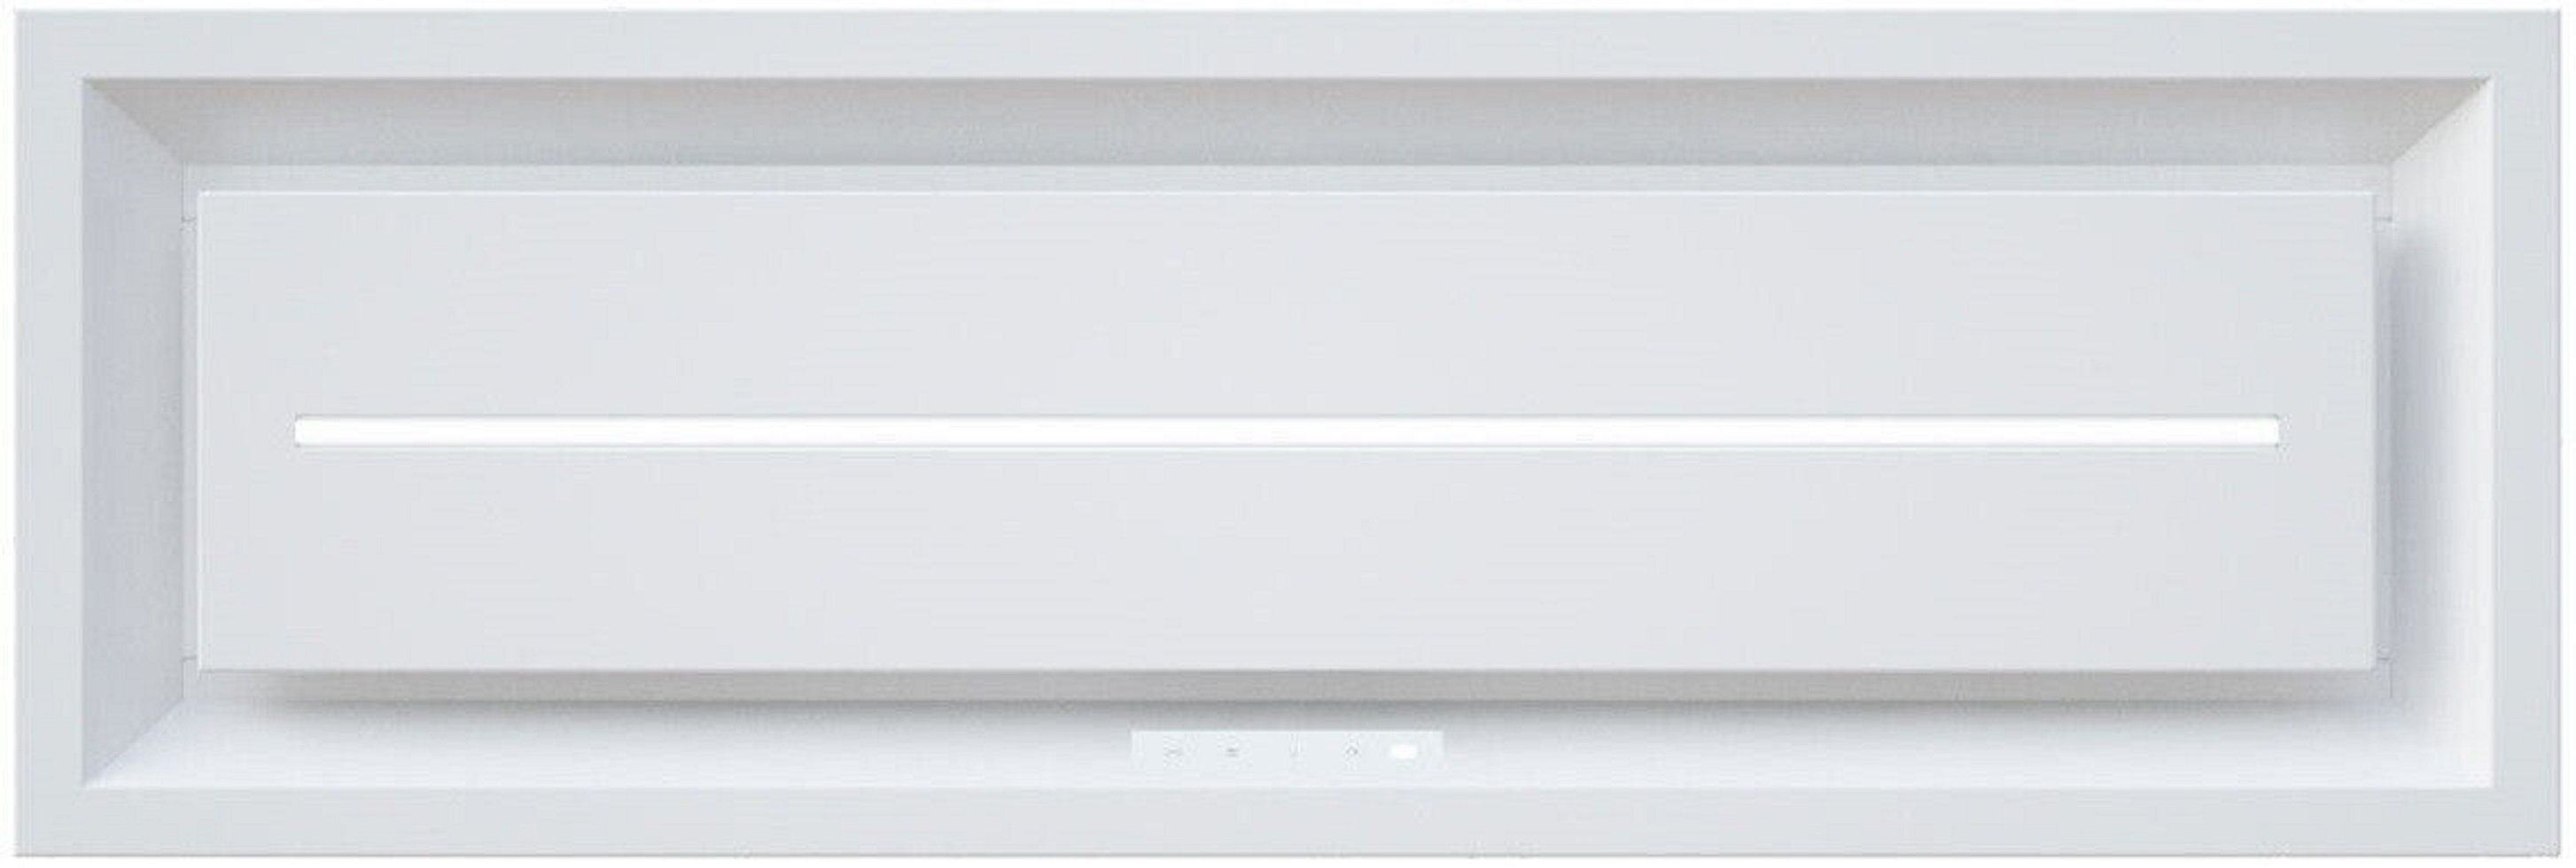 Baumann Deckenhaube Aurora 9030 Weiß, Deckenhaube 90 cm Dunstabzugshaube Weiß 857m³/h Einbau Haube